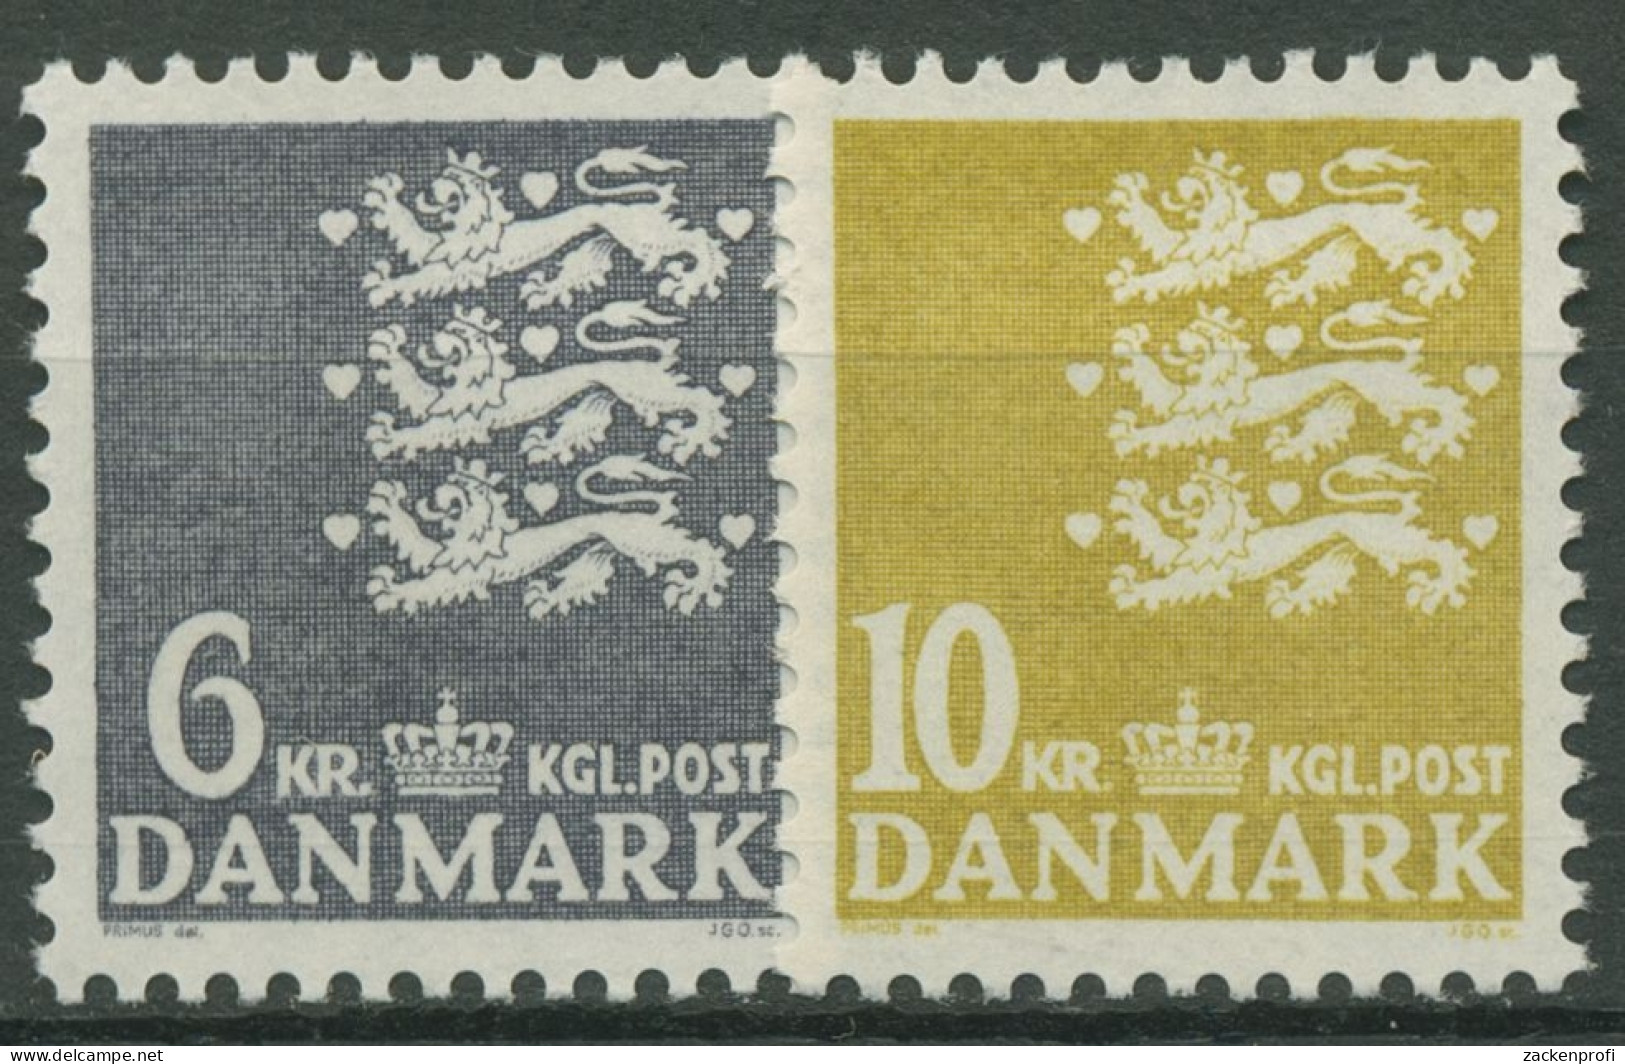 Dänemark 1976 Kleines Reichswappen 625/26 Postfrisch - Ongebruikt